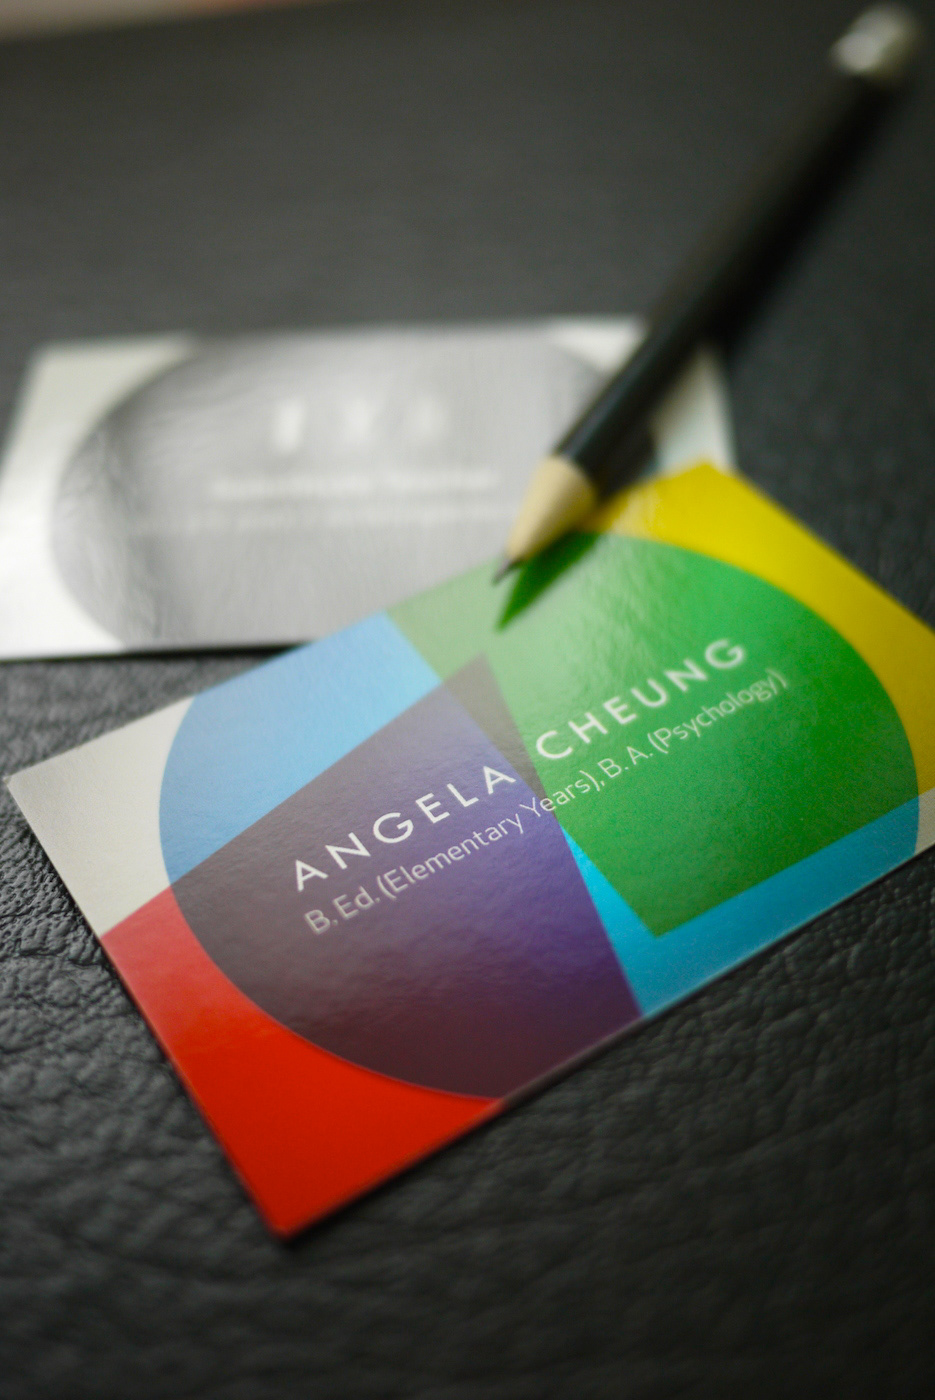 business card Business Cards cards card substitute teacher elementary psychology angela cheung